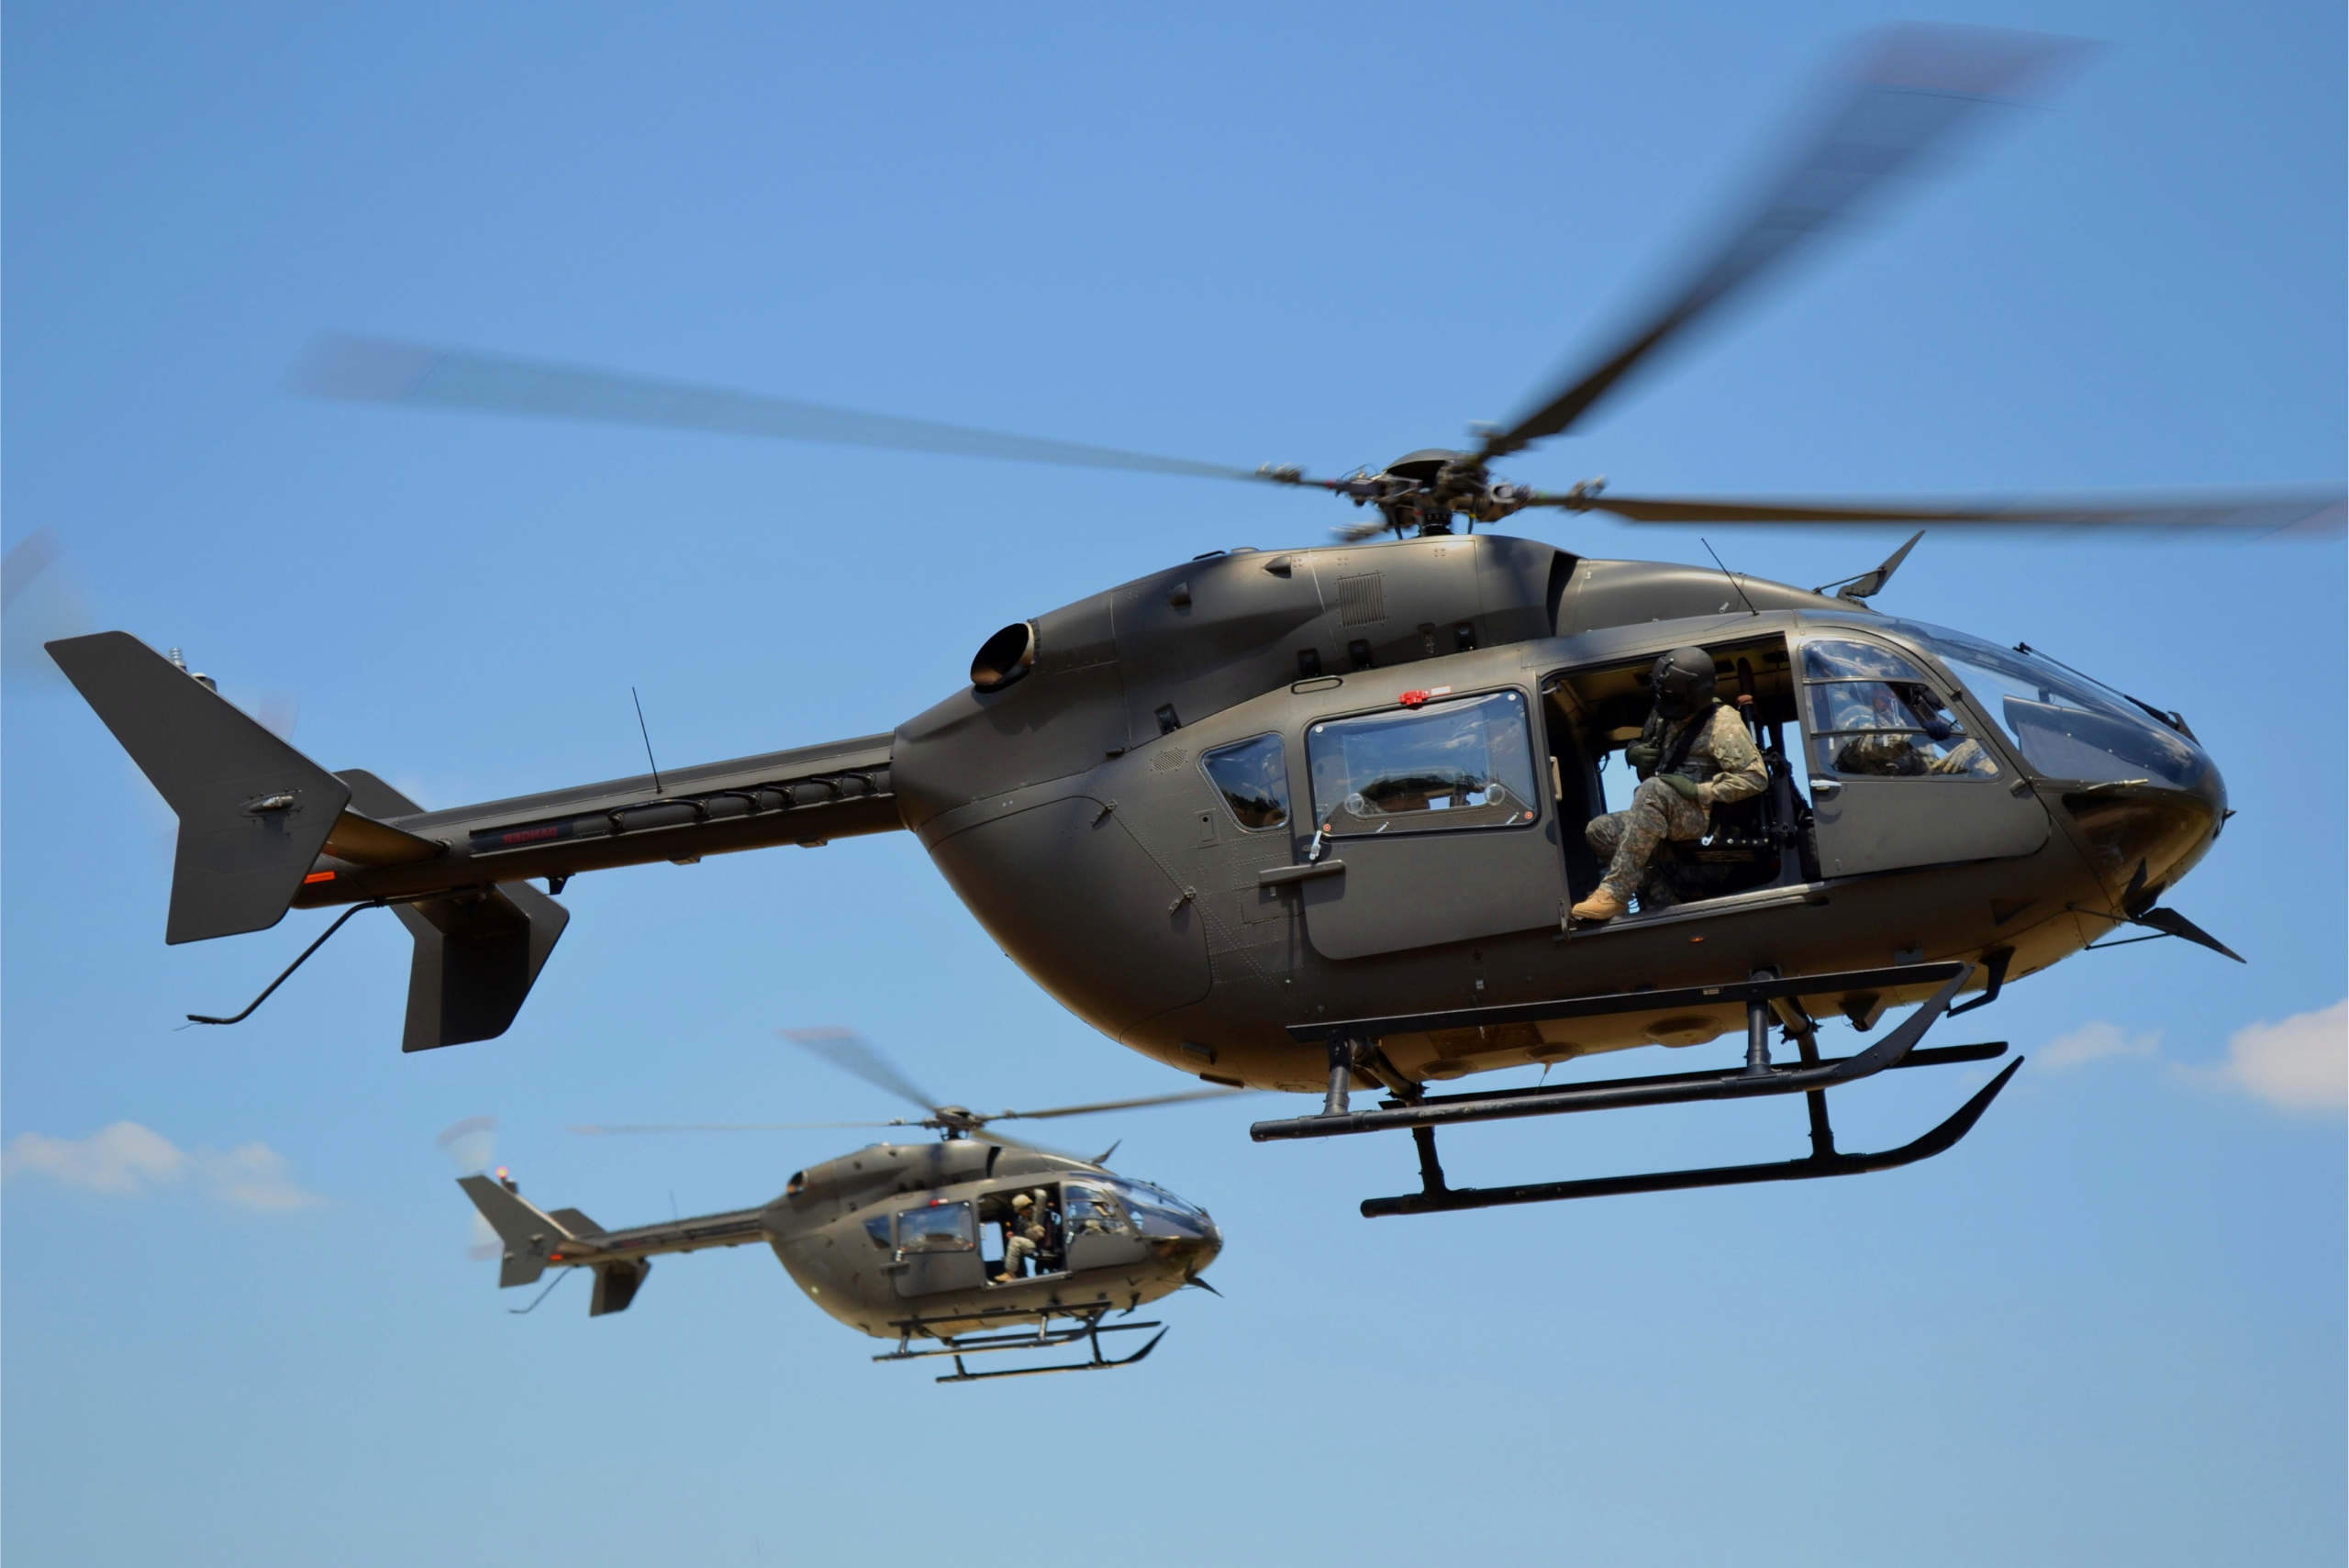 Two Lakota Helicopters Flying